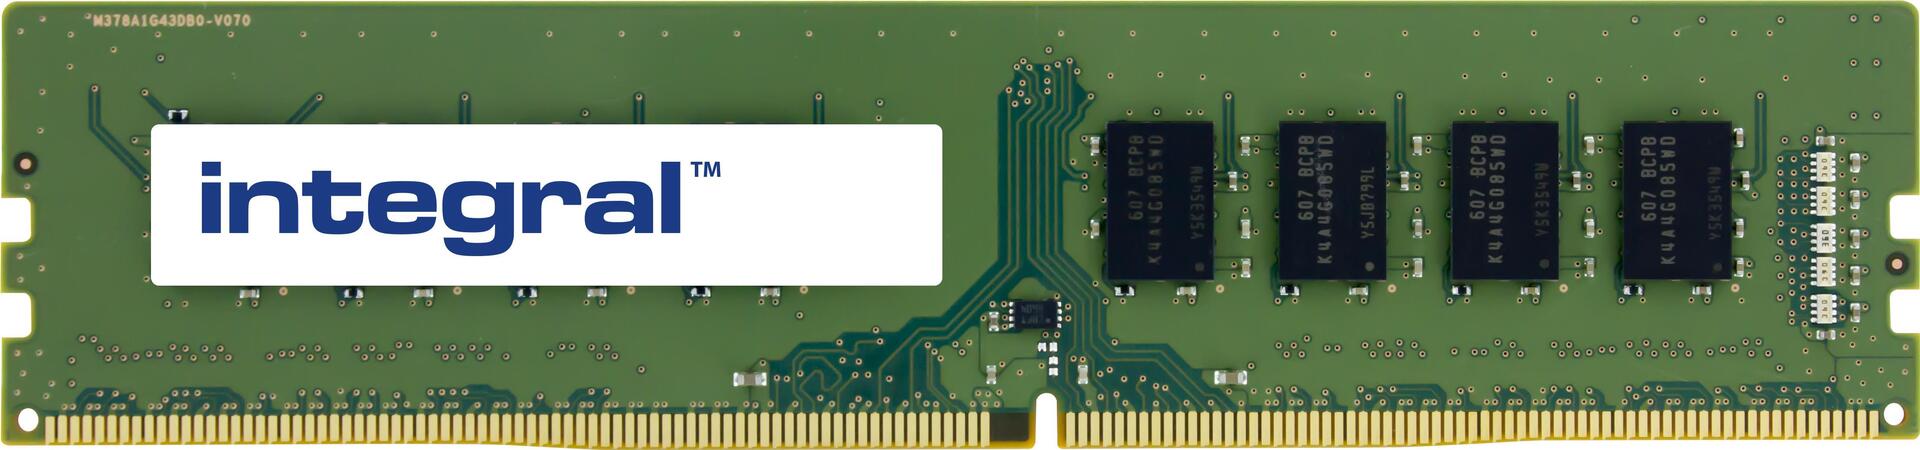 Integral 8GB PC RAM MODULE DDR4 3200MHZ PC4-25600 UNBUFFERED NON-ECC 1.2V 1GX8 CL22 VALUE Speichermodul 1 x 8 GB (IN4T8GNGLTI)